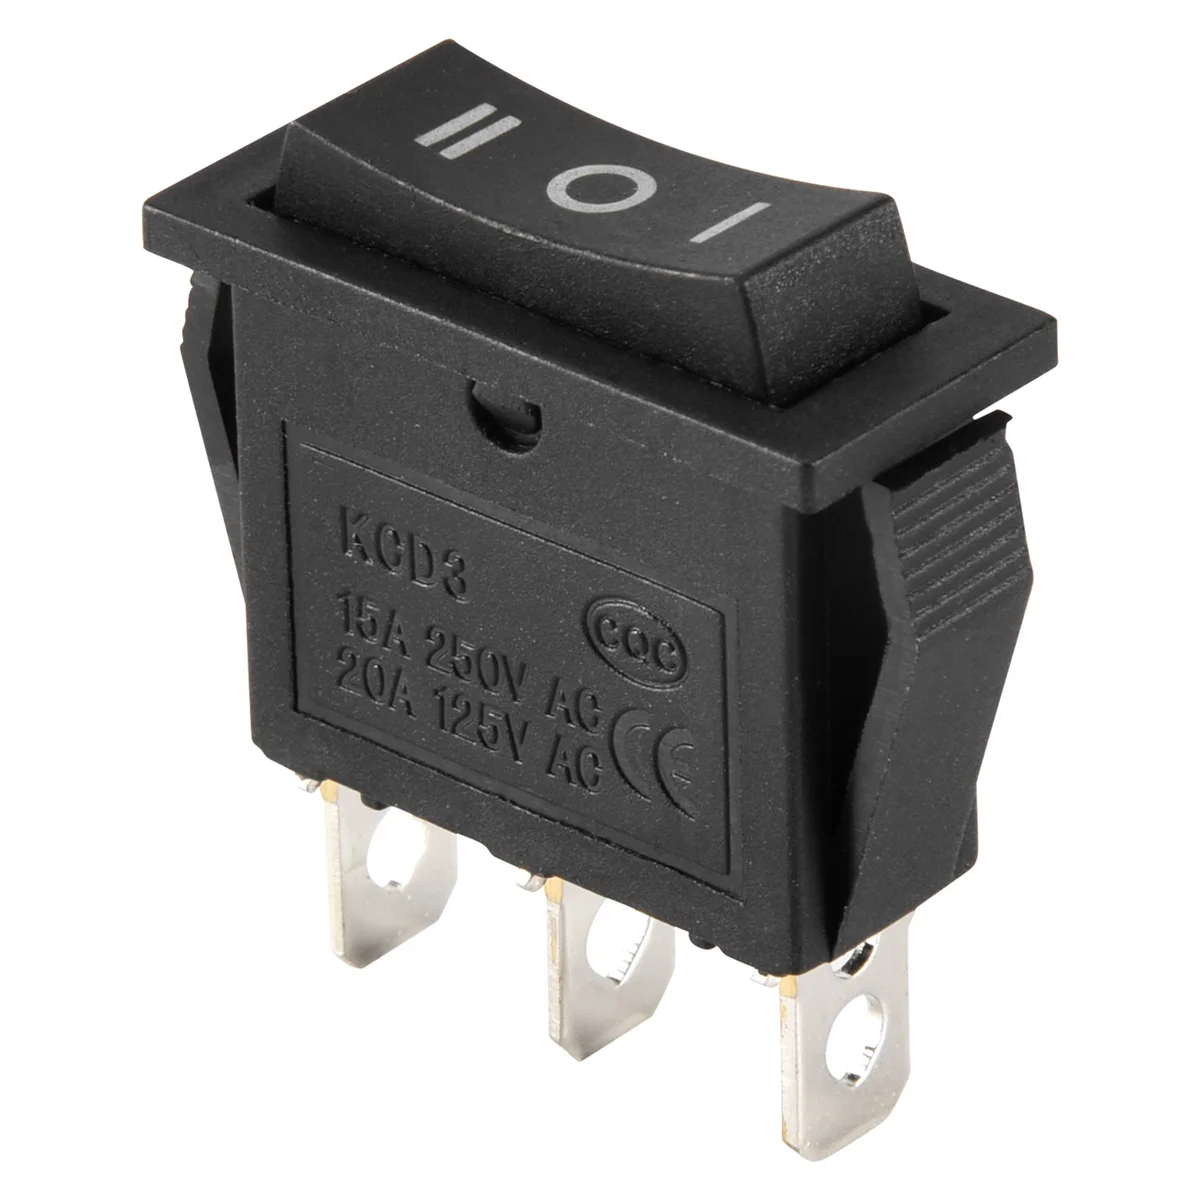 

AC15A/250V 20A/125V 3-контактный SPDT ВКЛ-ВЫКЛ 3-позиционный кнопочный переключатель